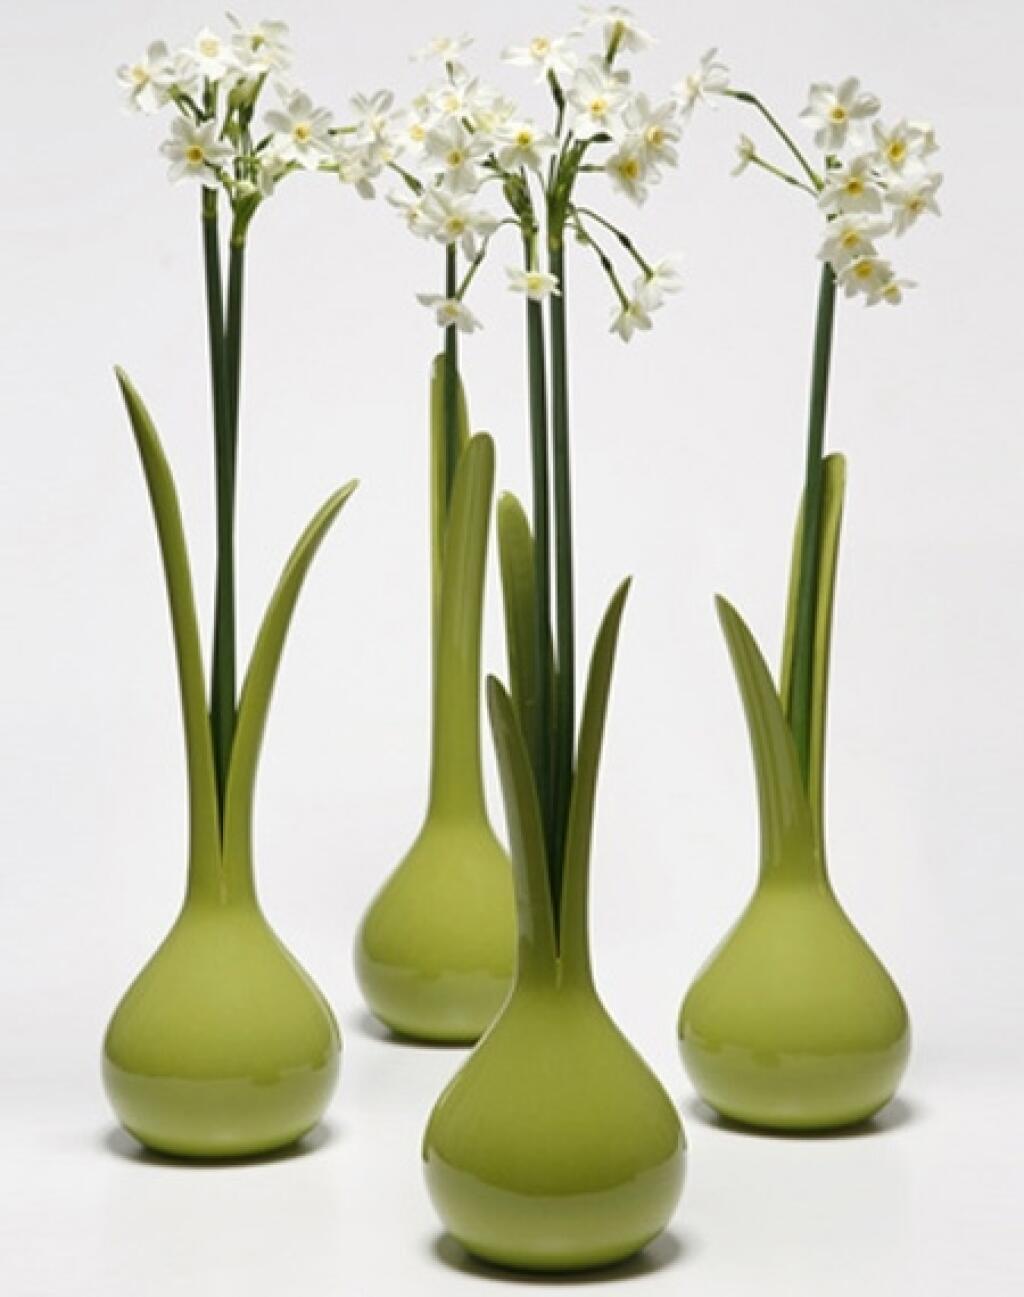 Оригинальные вазы. Оригинальные вазы для цветов. Интересные вазы. Дизайнерские вазы. Куплю вазы в оригинале